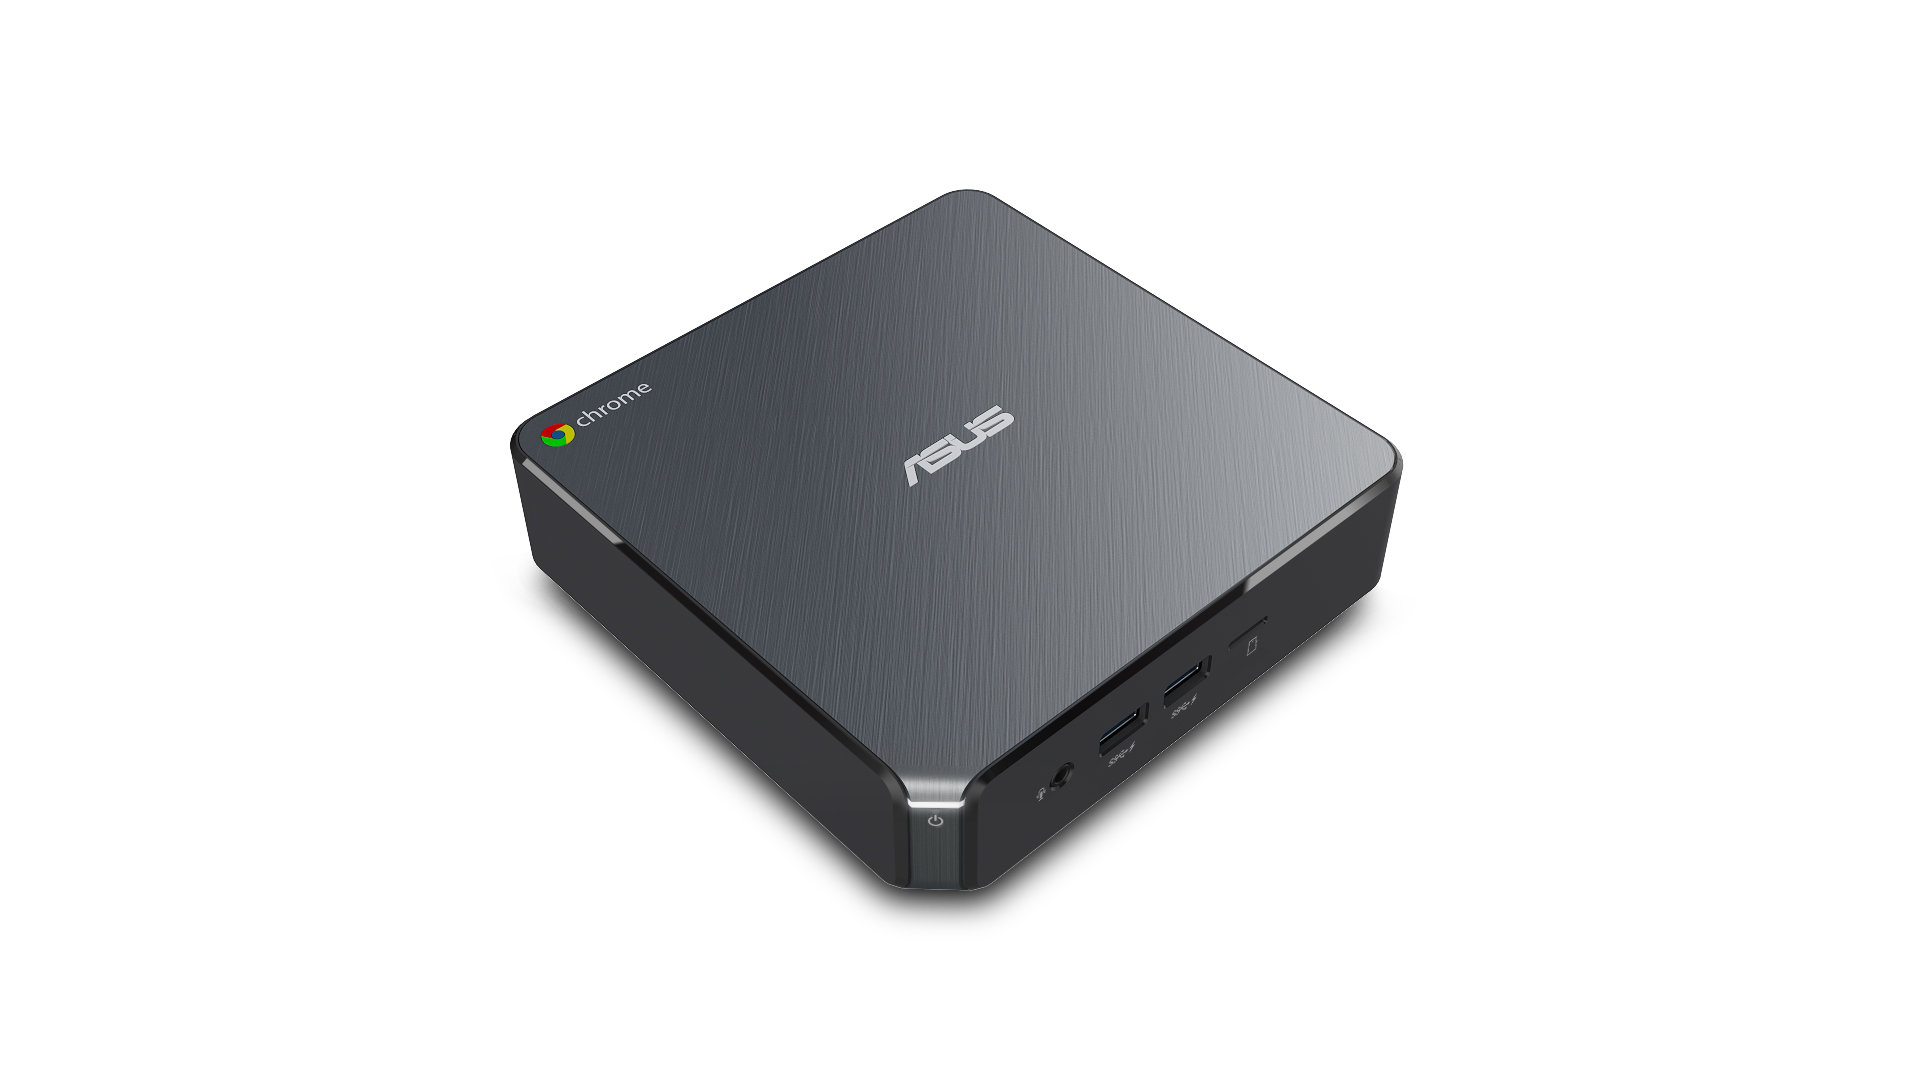 ASUS công bố Chromebox 3 với bộ xử lý Intel Core thứ 8, dành cho các doanh nghiệp.